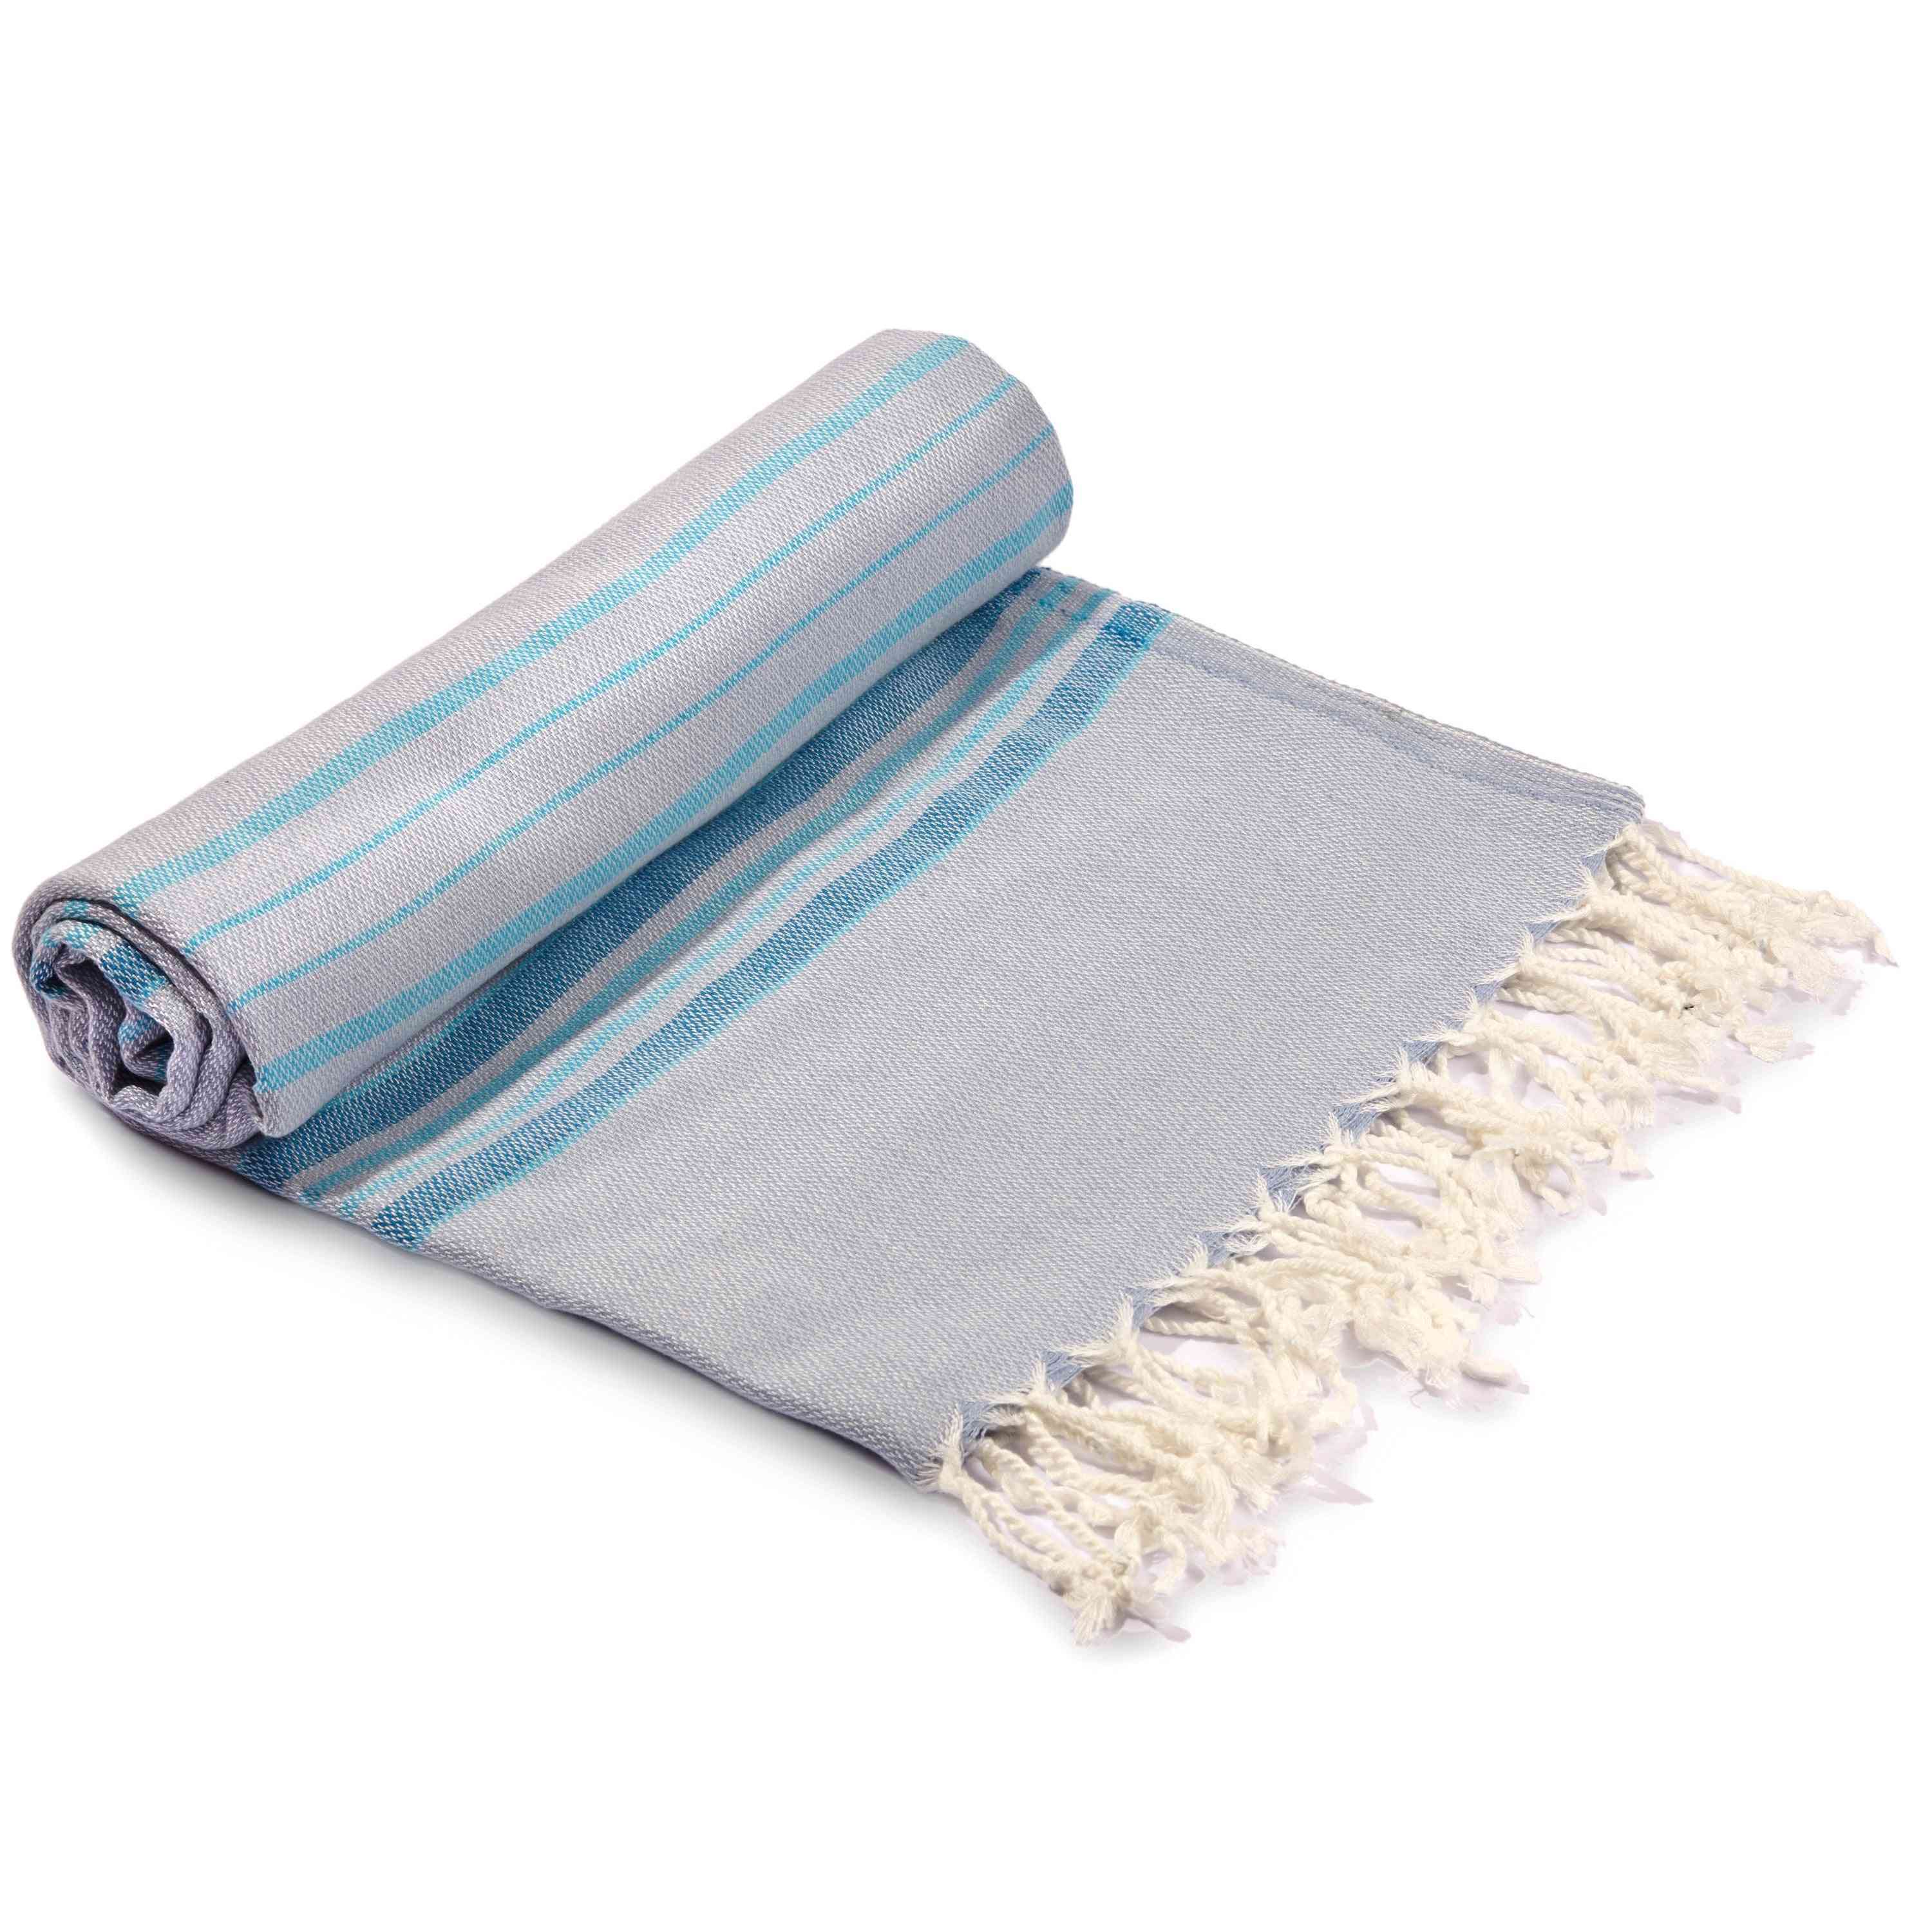 Lázeňský/plážový ručník s designem pásu antalya